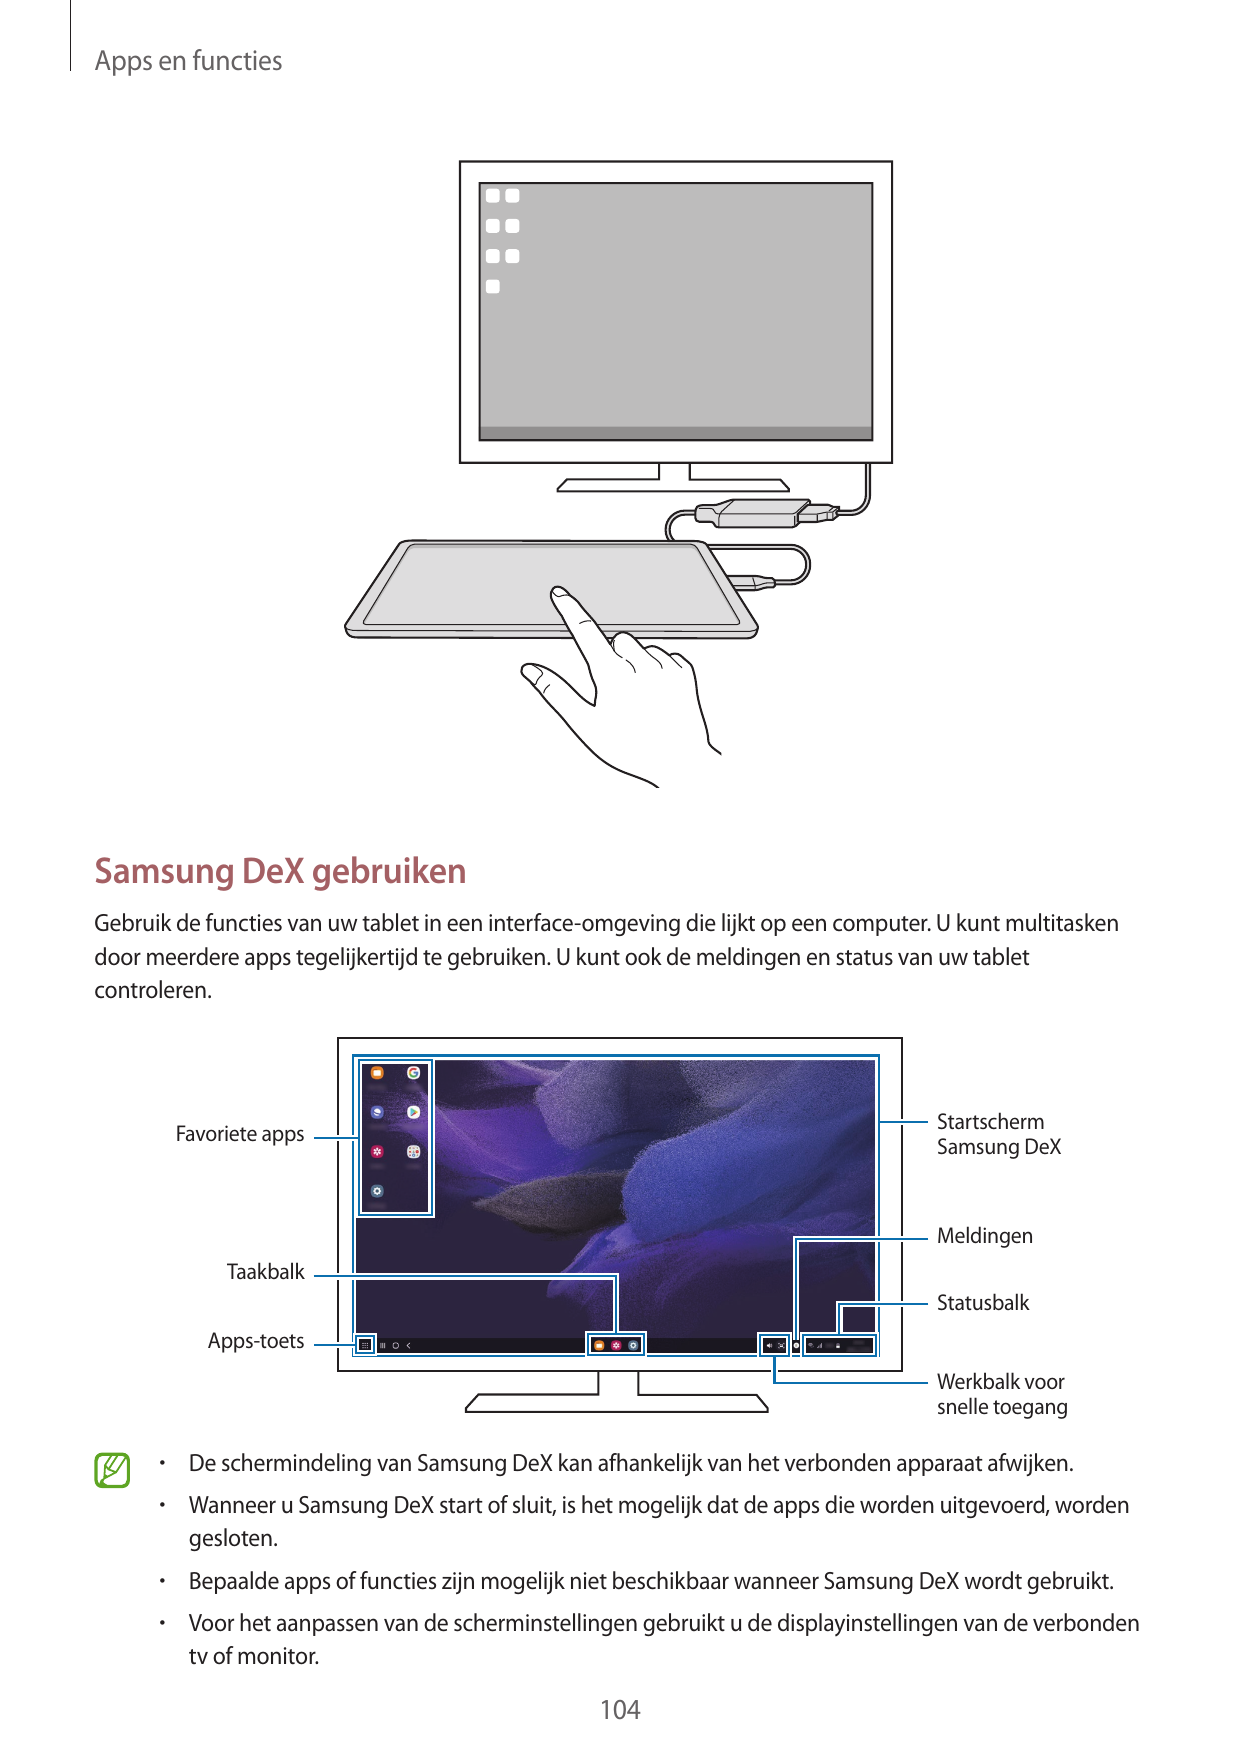 Apps en functiesSamsung DeX gebruikenGebruik de functies van uw tablet in een interface-omgeving die lijkt op een computer. U ku